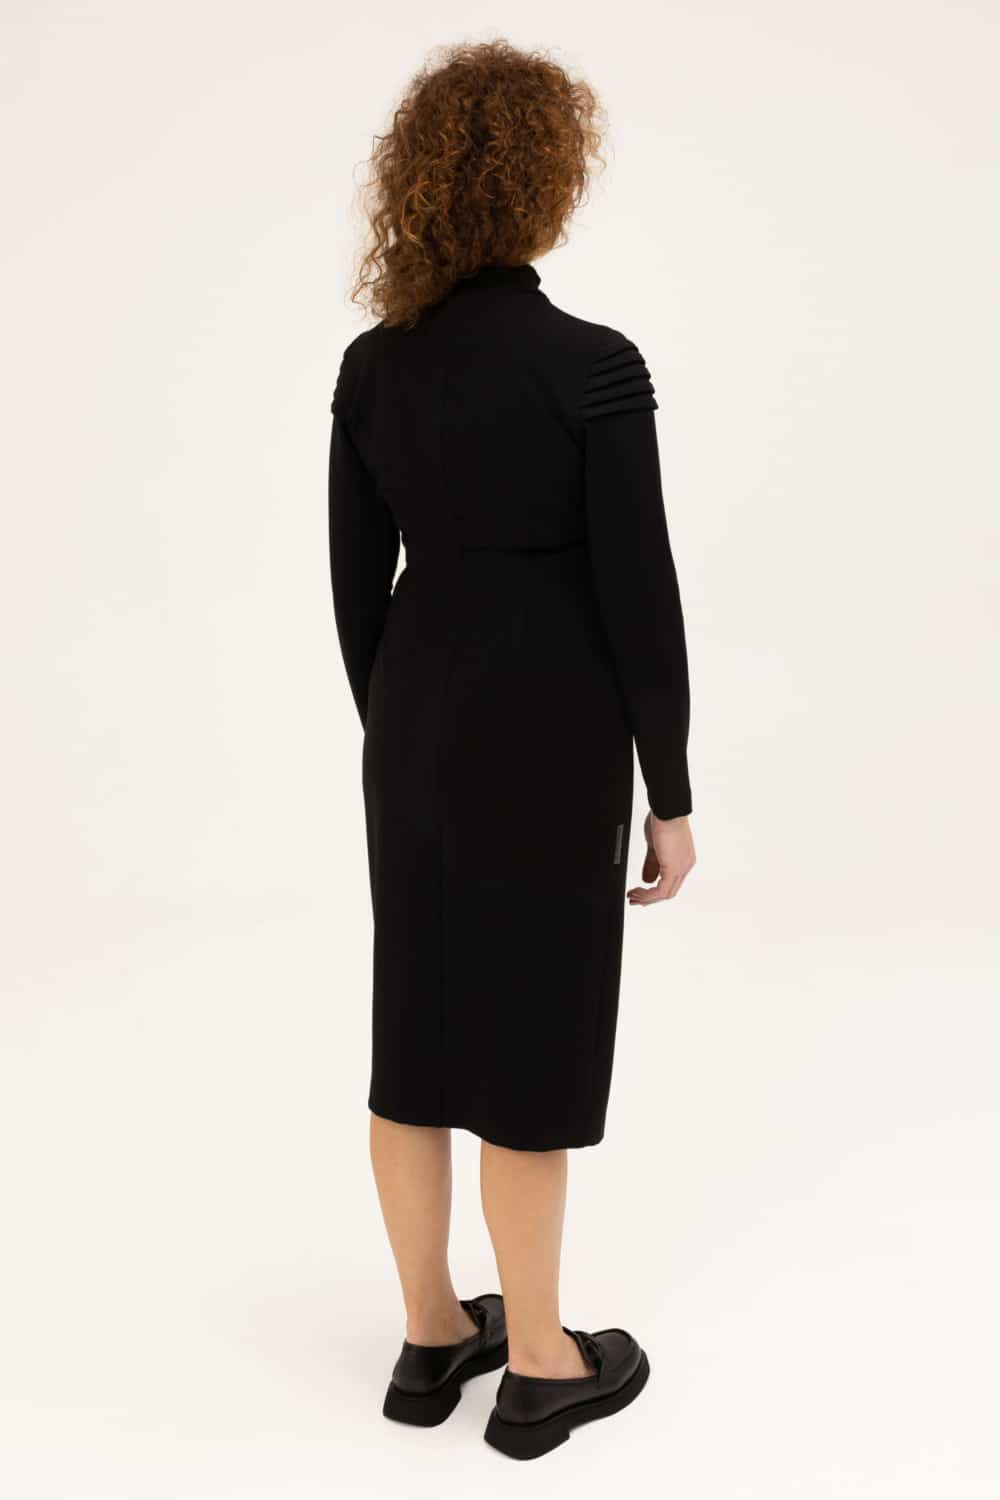 juodos spalvos smart casual suknelė